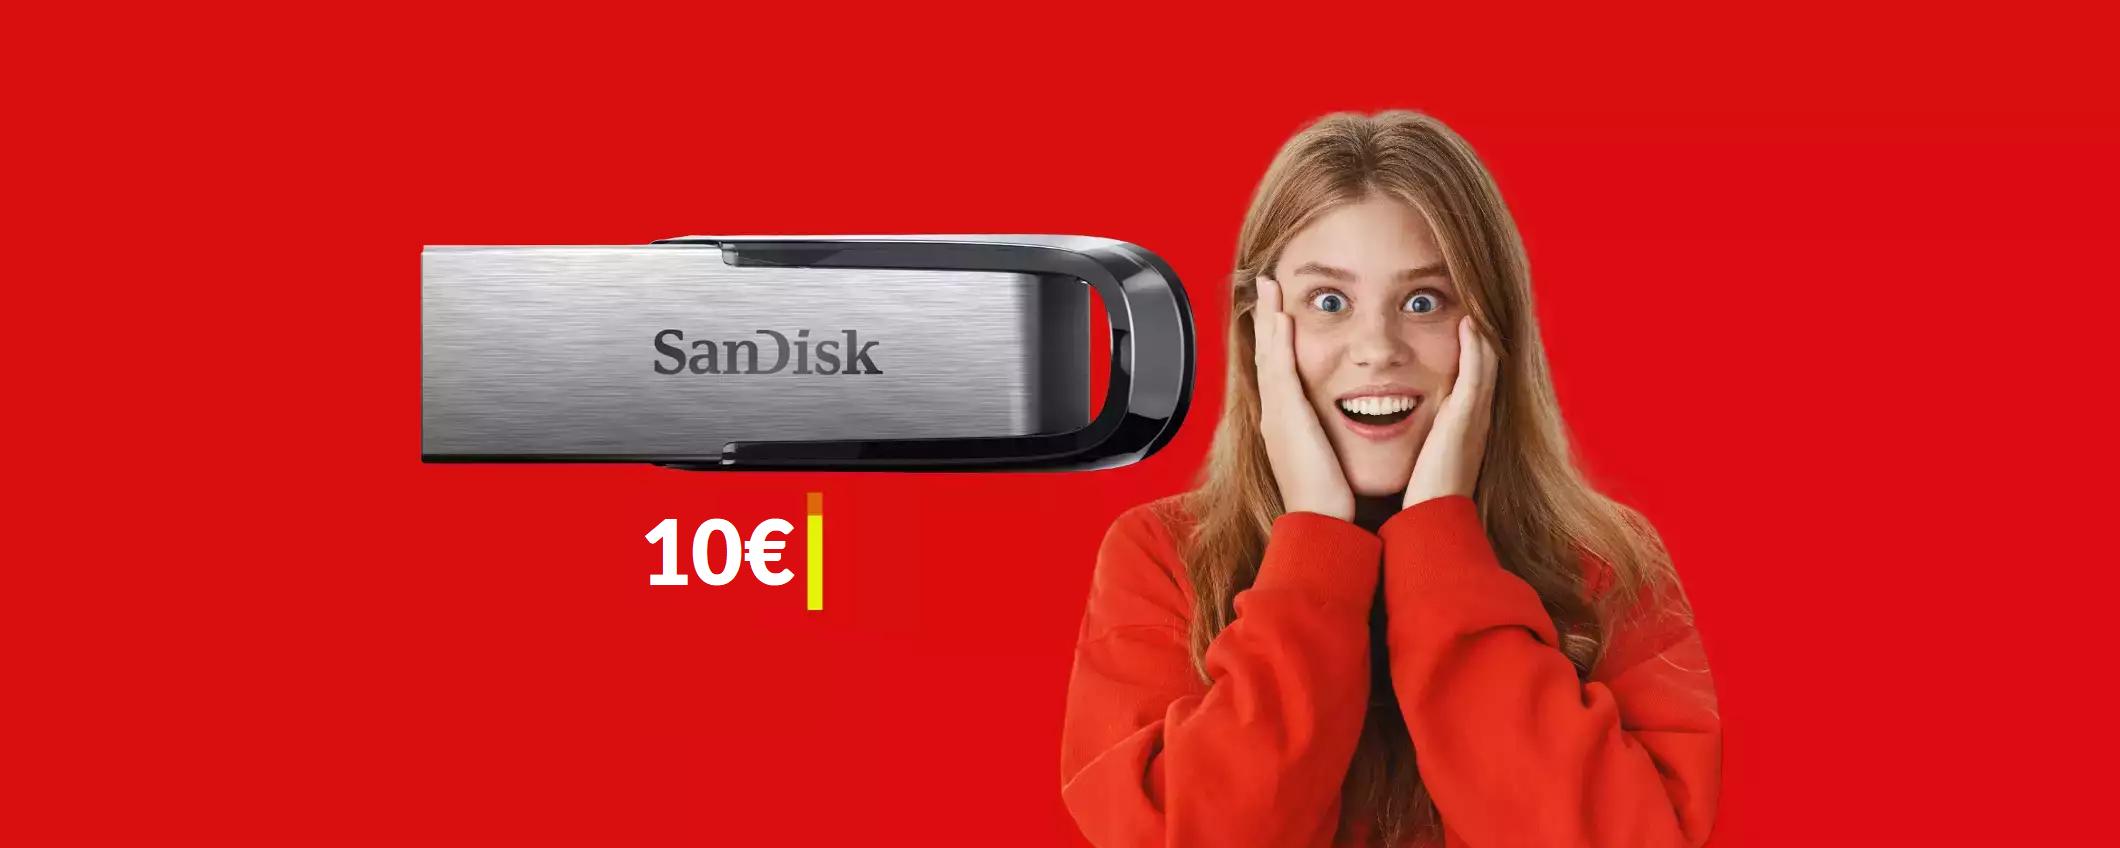 Chiavetta USB 64GB in metallo ad appena 10€: veloce e resistente